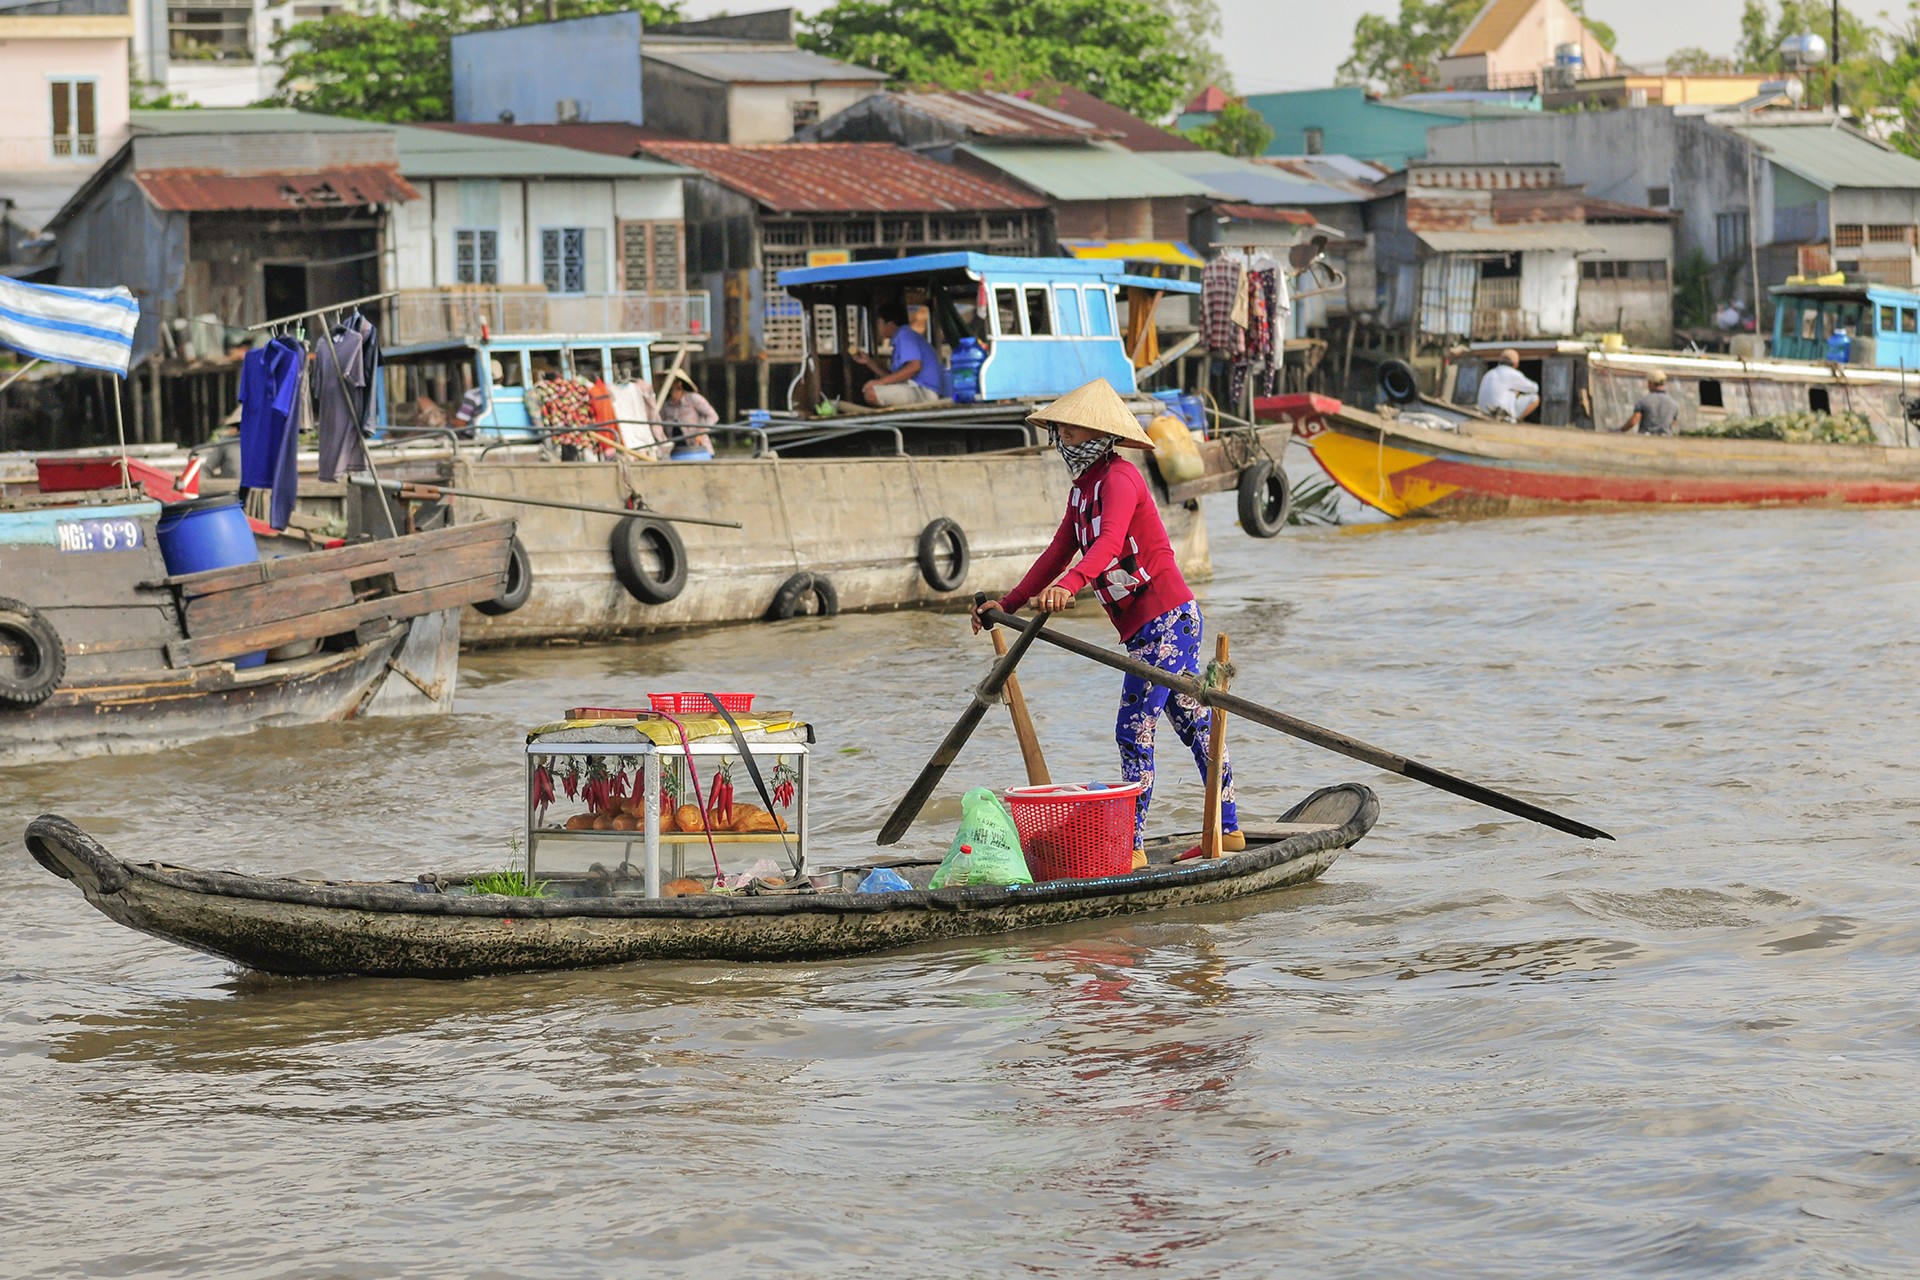 Les marchés flottants du mekong 4 